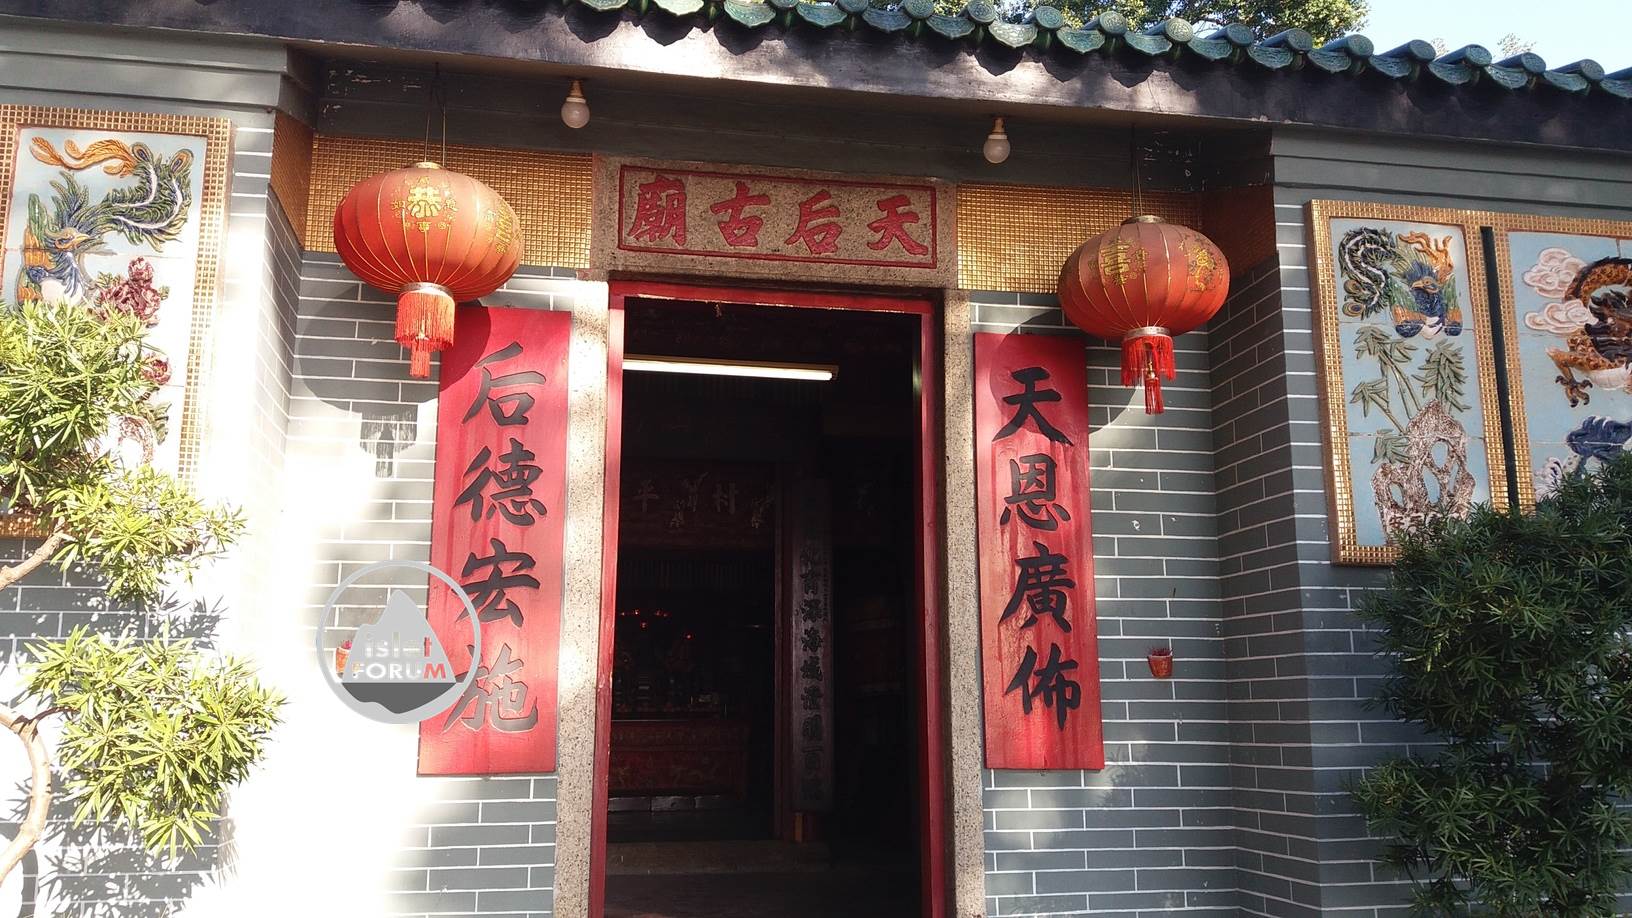 龍鼓灘天后廟lung kwu tan tin hau temple (21).jpg